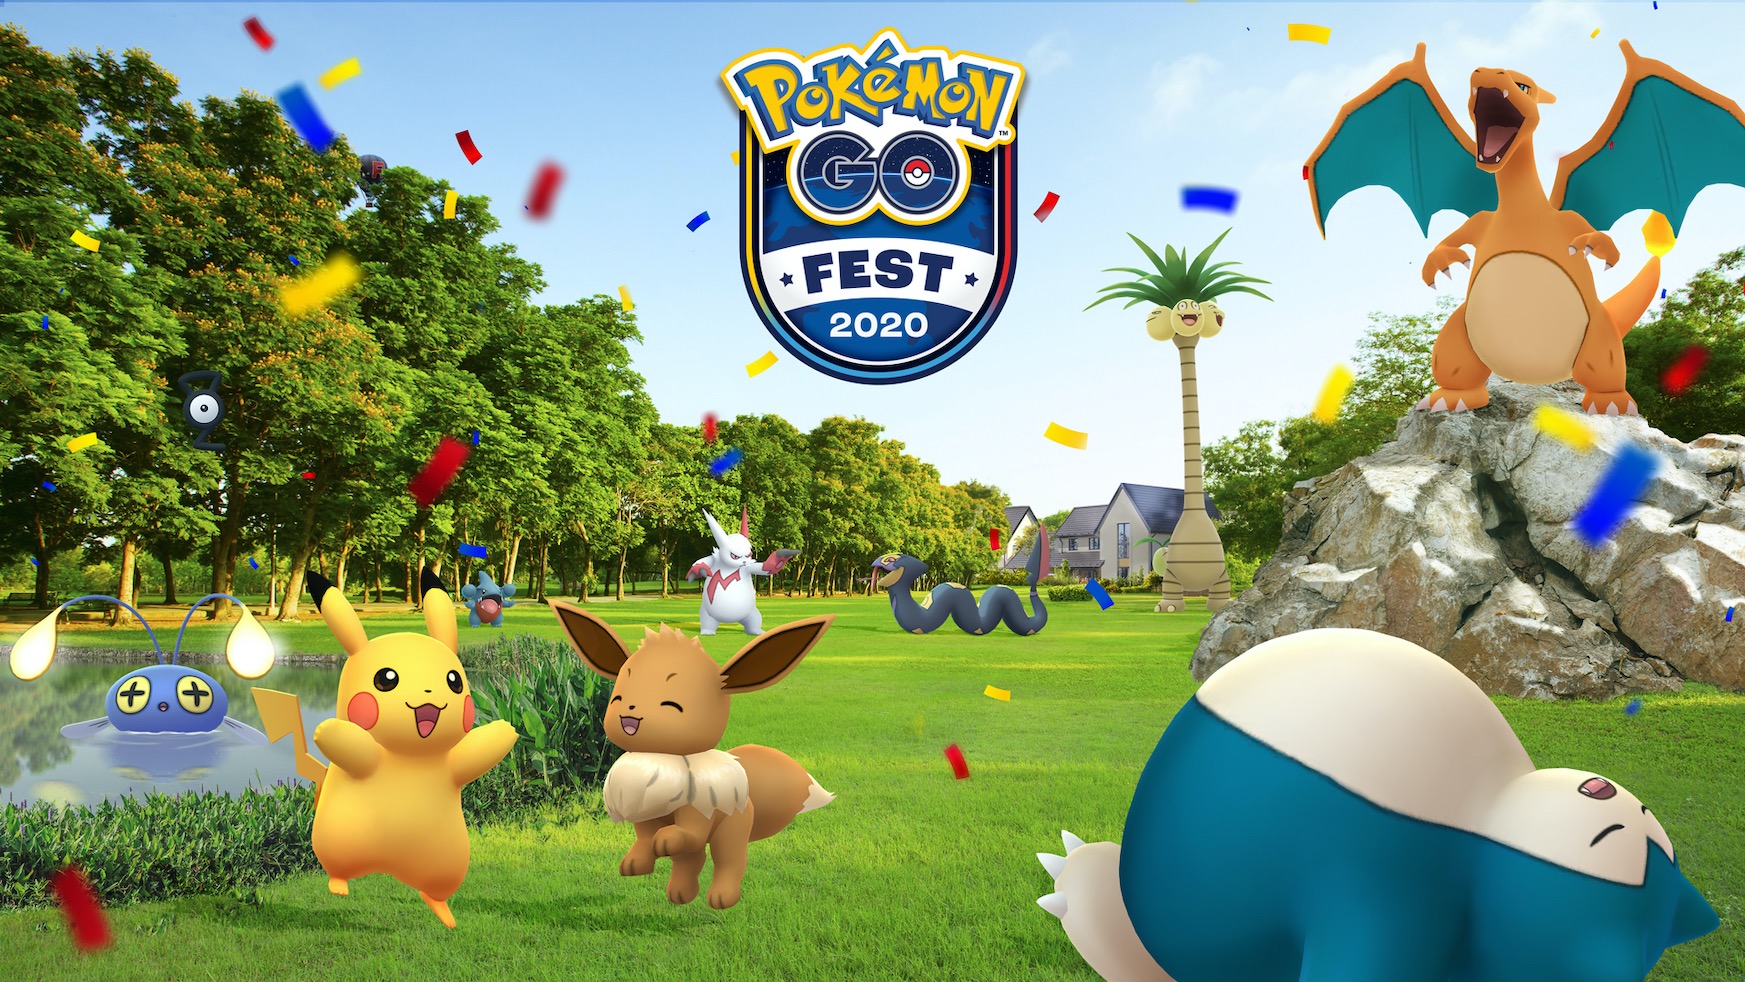 Jokalari poloniarrek Pokemon GO Fest jaialdian parte hartuko dute lehenengo aldiz